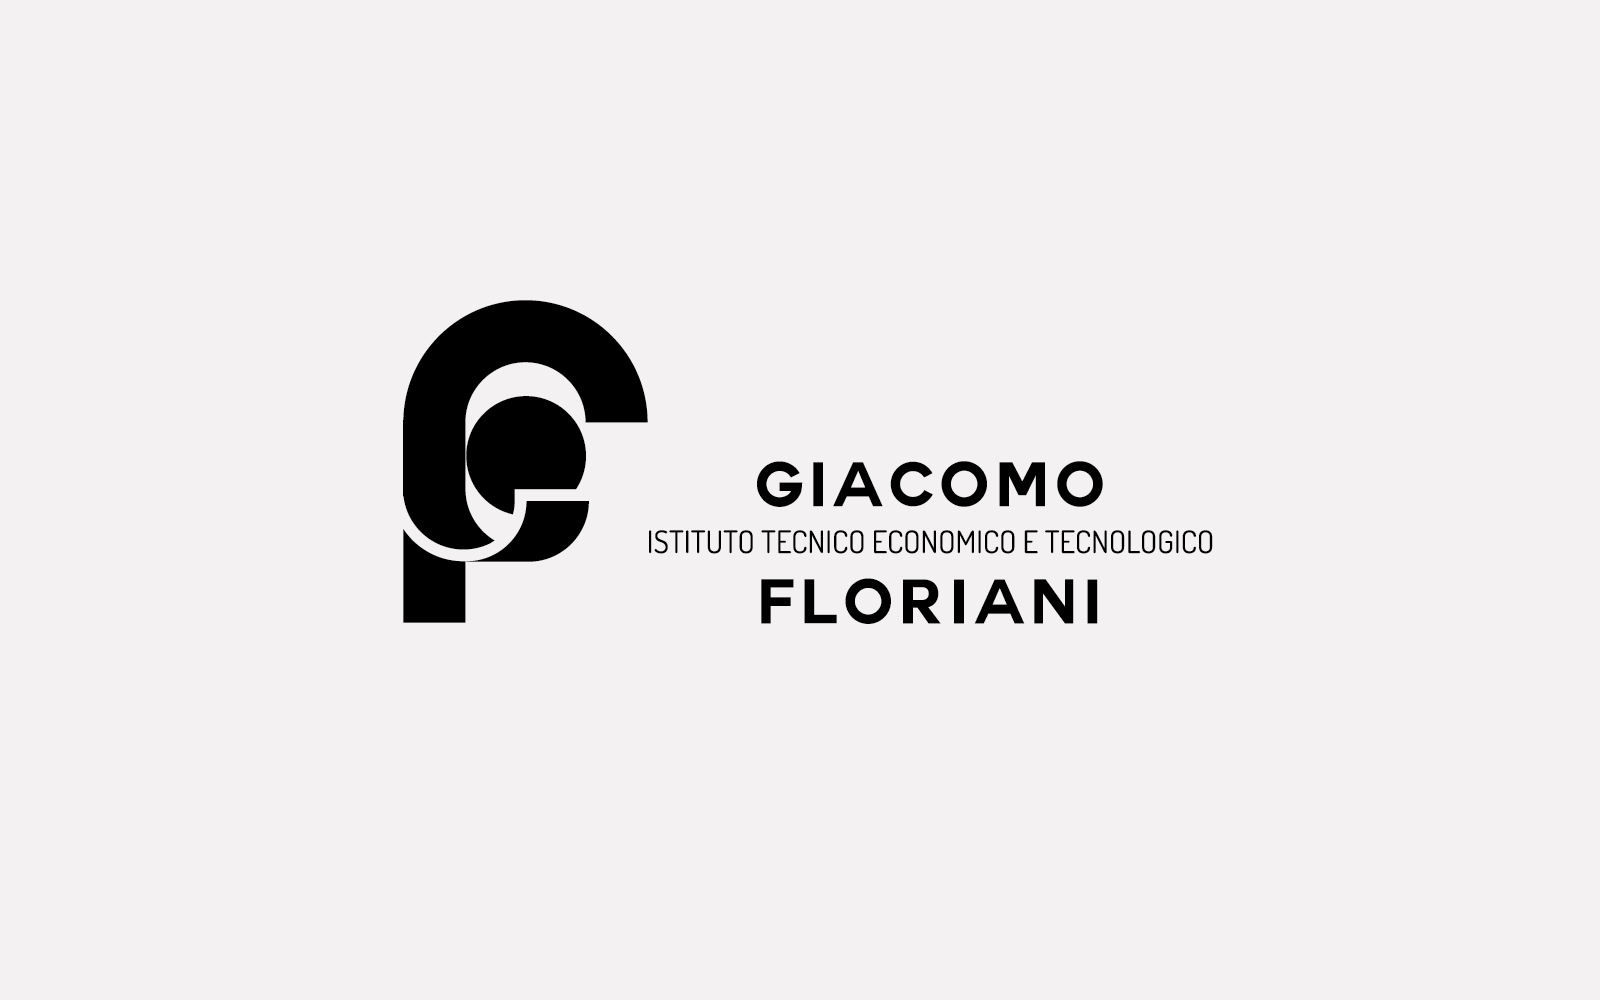 progetto del logo per scuola giacomo floriani riva del garda, ideato da diadestudio agenzia grafica arco trento